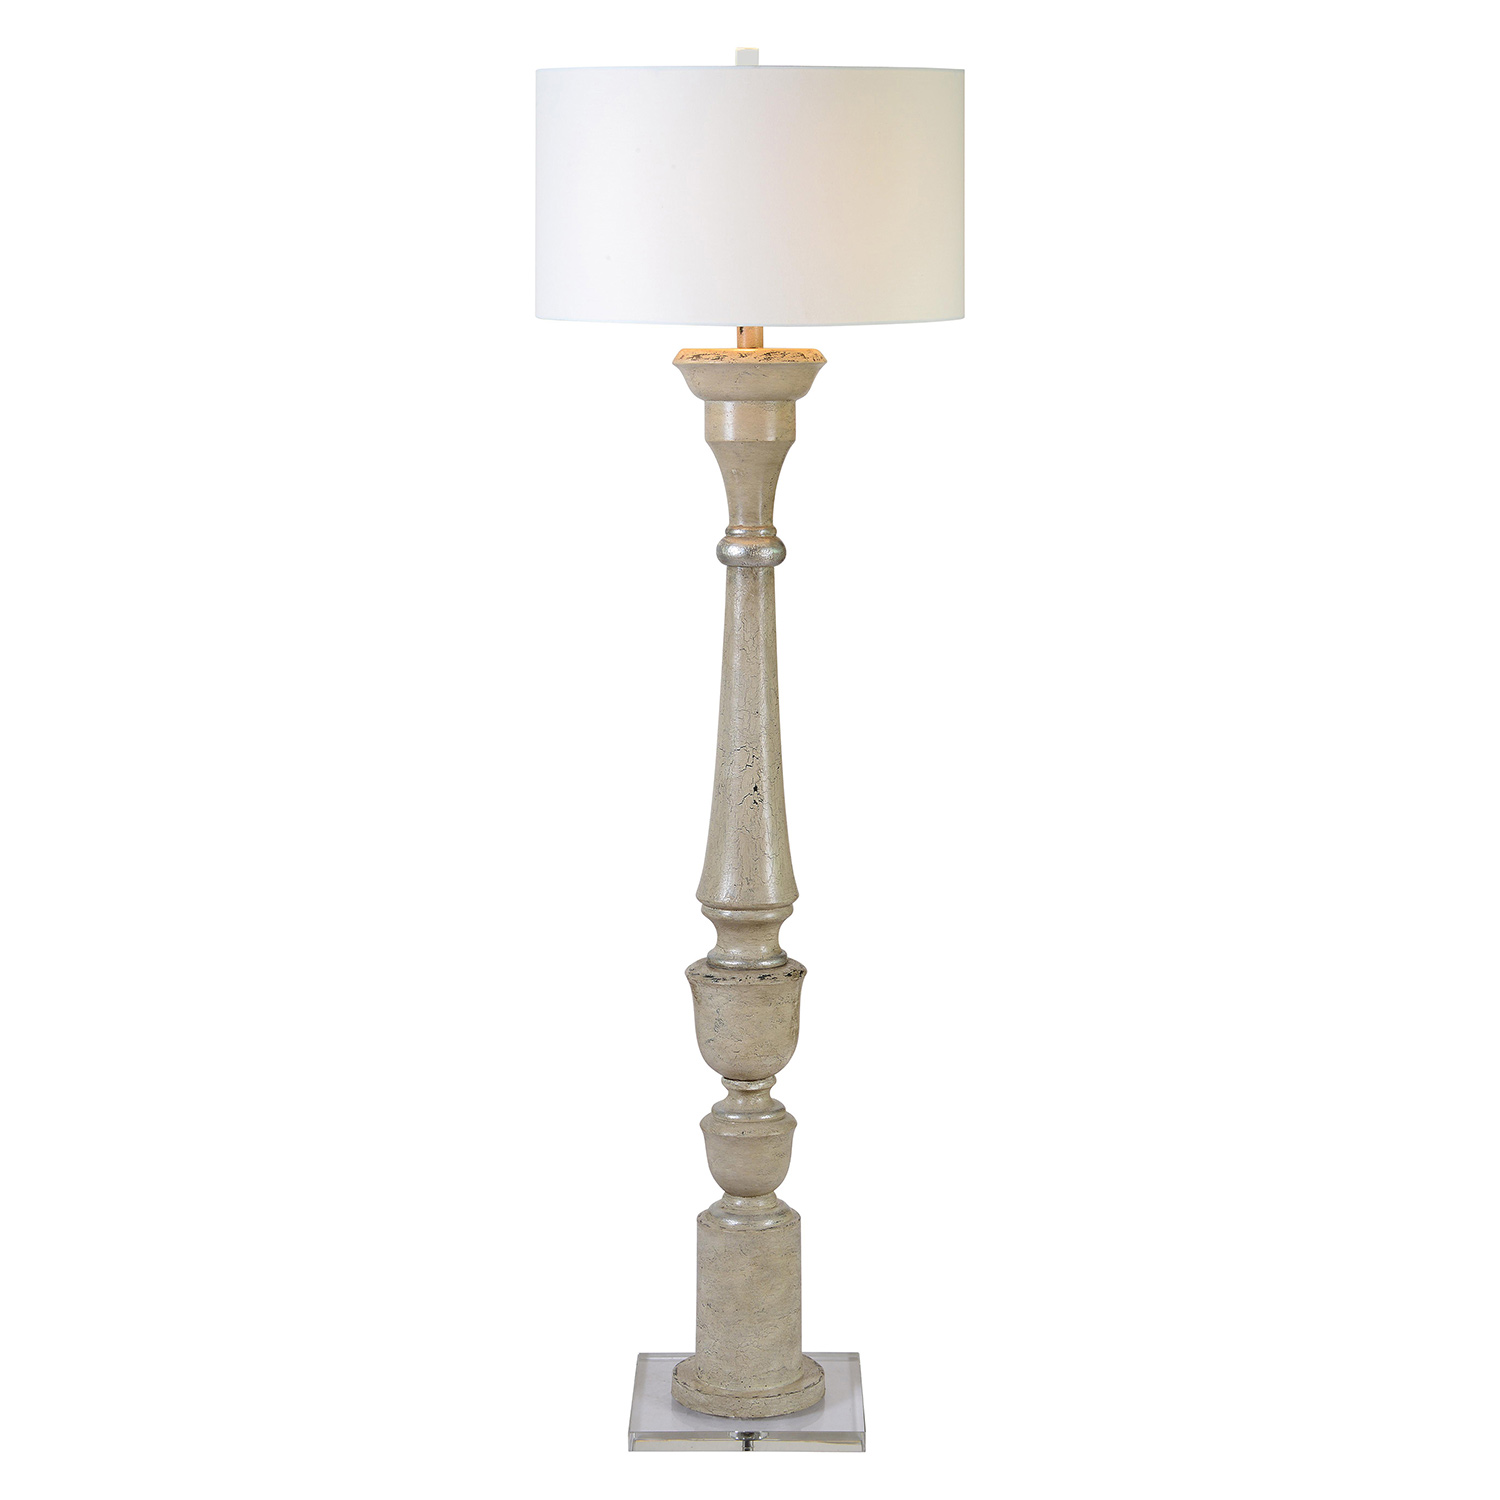 Ren-Wil Windsor Floor Lamp - Antique White